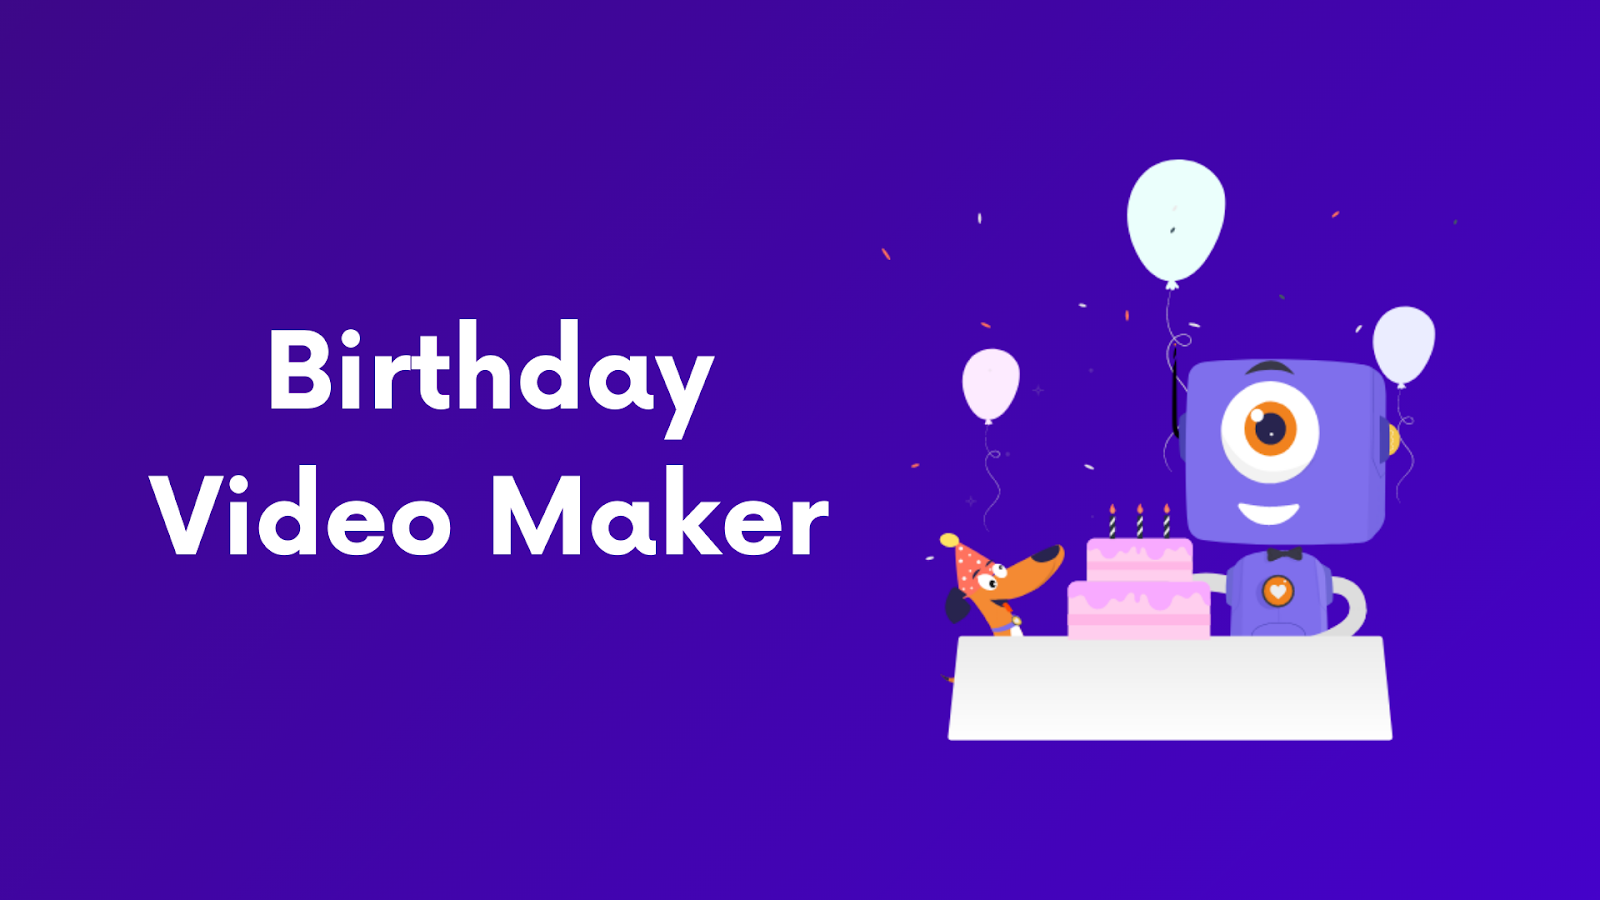 Nếu bạn đang tìm kiếm một công cụ để tạo video sinh nhật độc đáo và thú vị, hãy đến với Birthday Video Maker - Templates! Với những mẫu mã đẹp mắt và đa dạng, bạn sẽ dễ dàng tạo ra những video sinh nhật đầy ý nghĩa cho bạn bè và người thân.